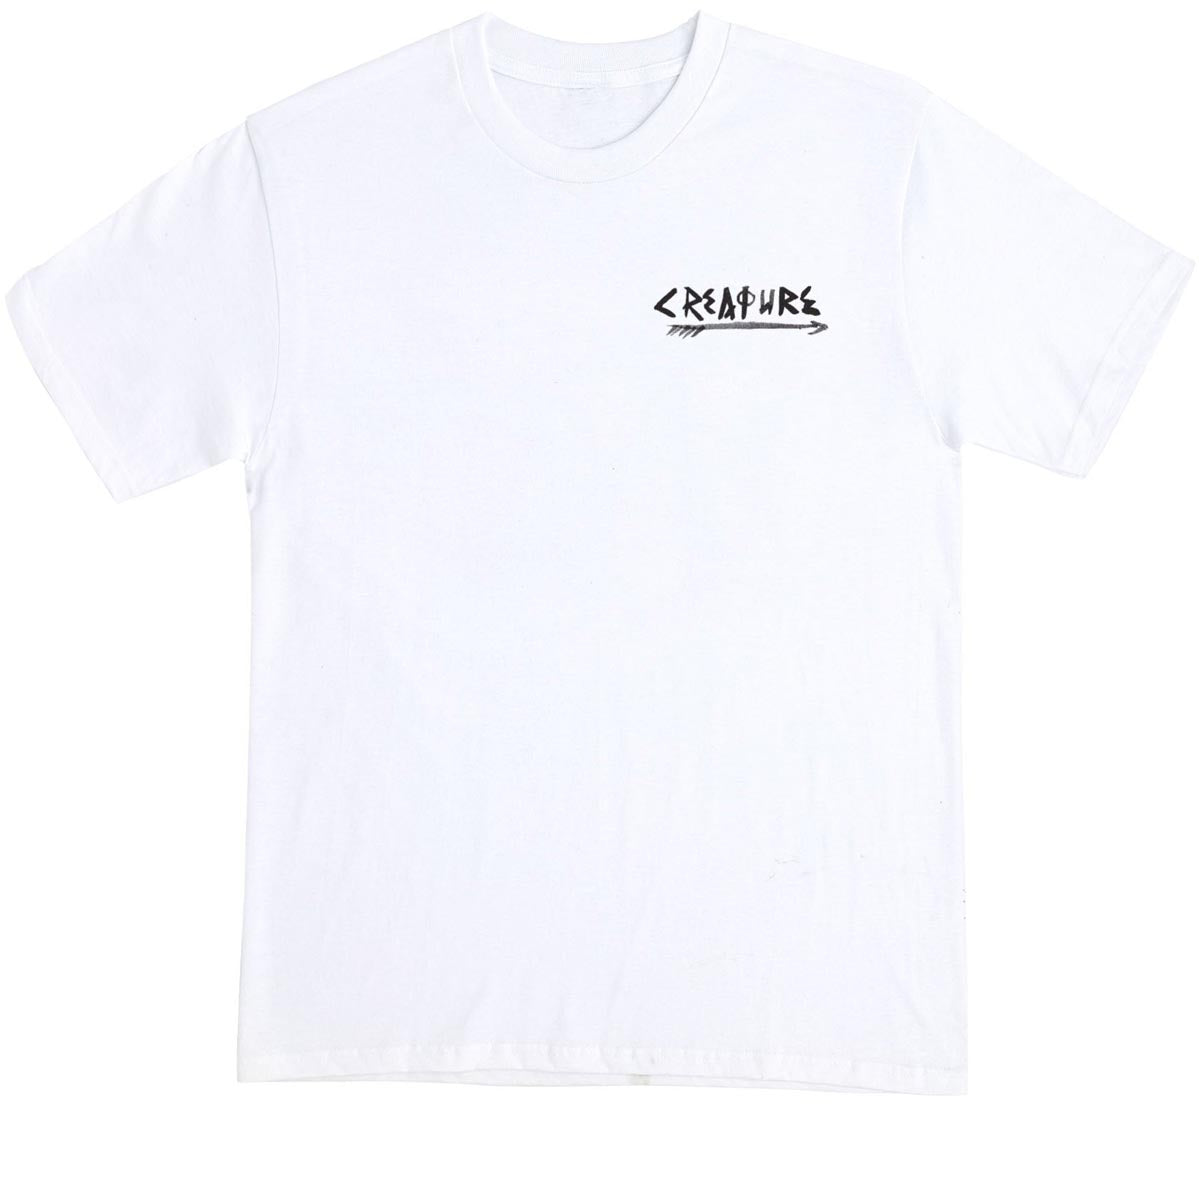 Creature Visualz T-Shirt - White image 2